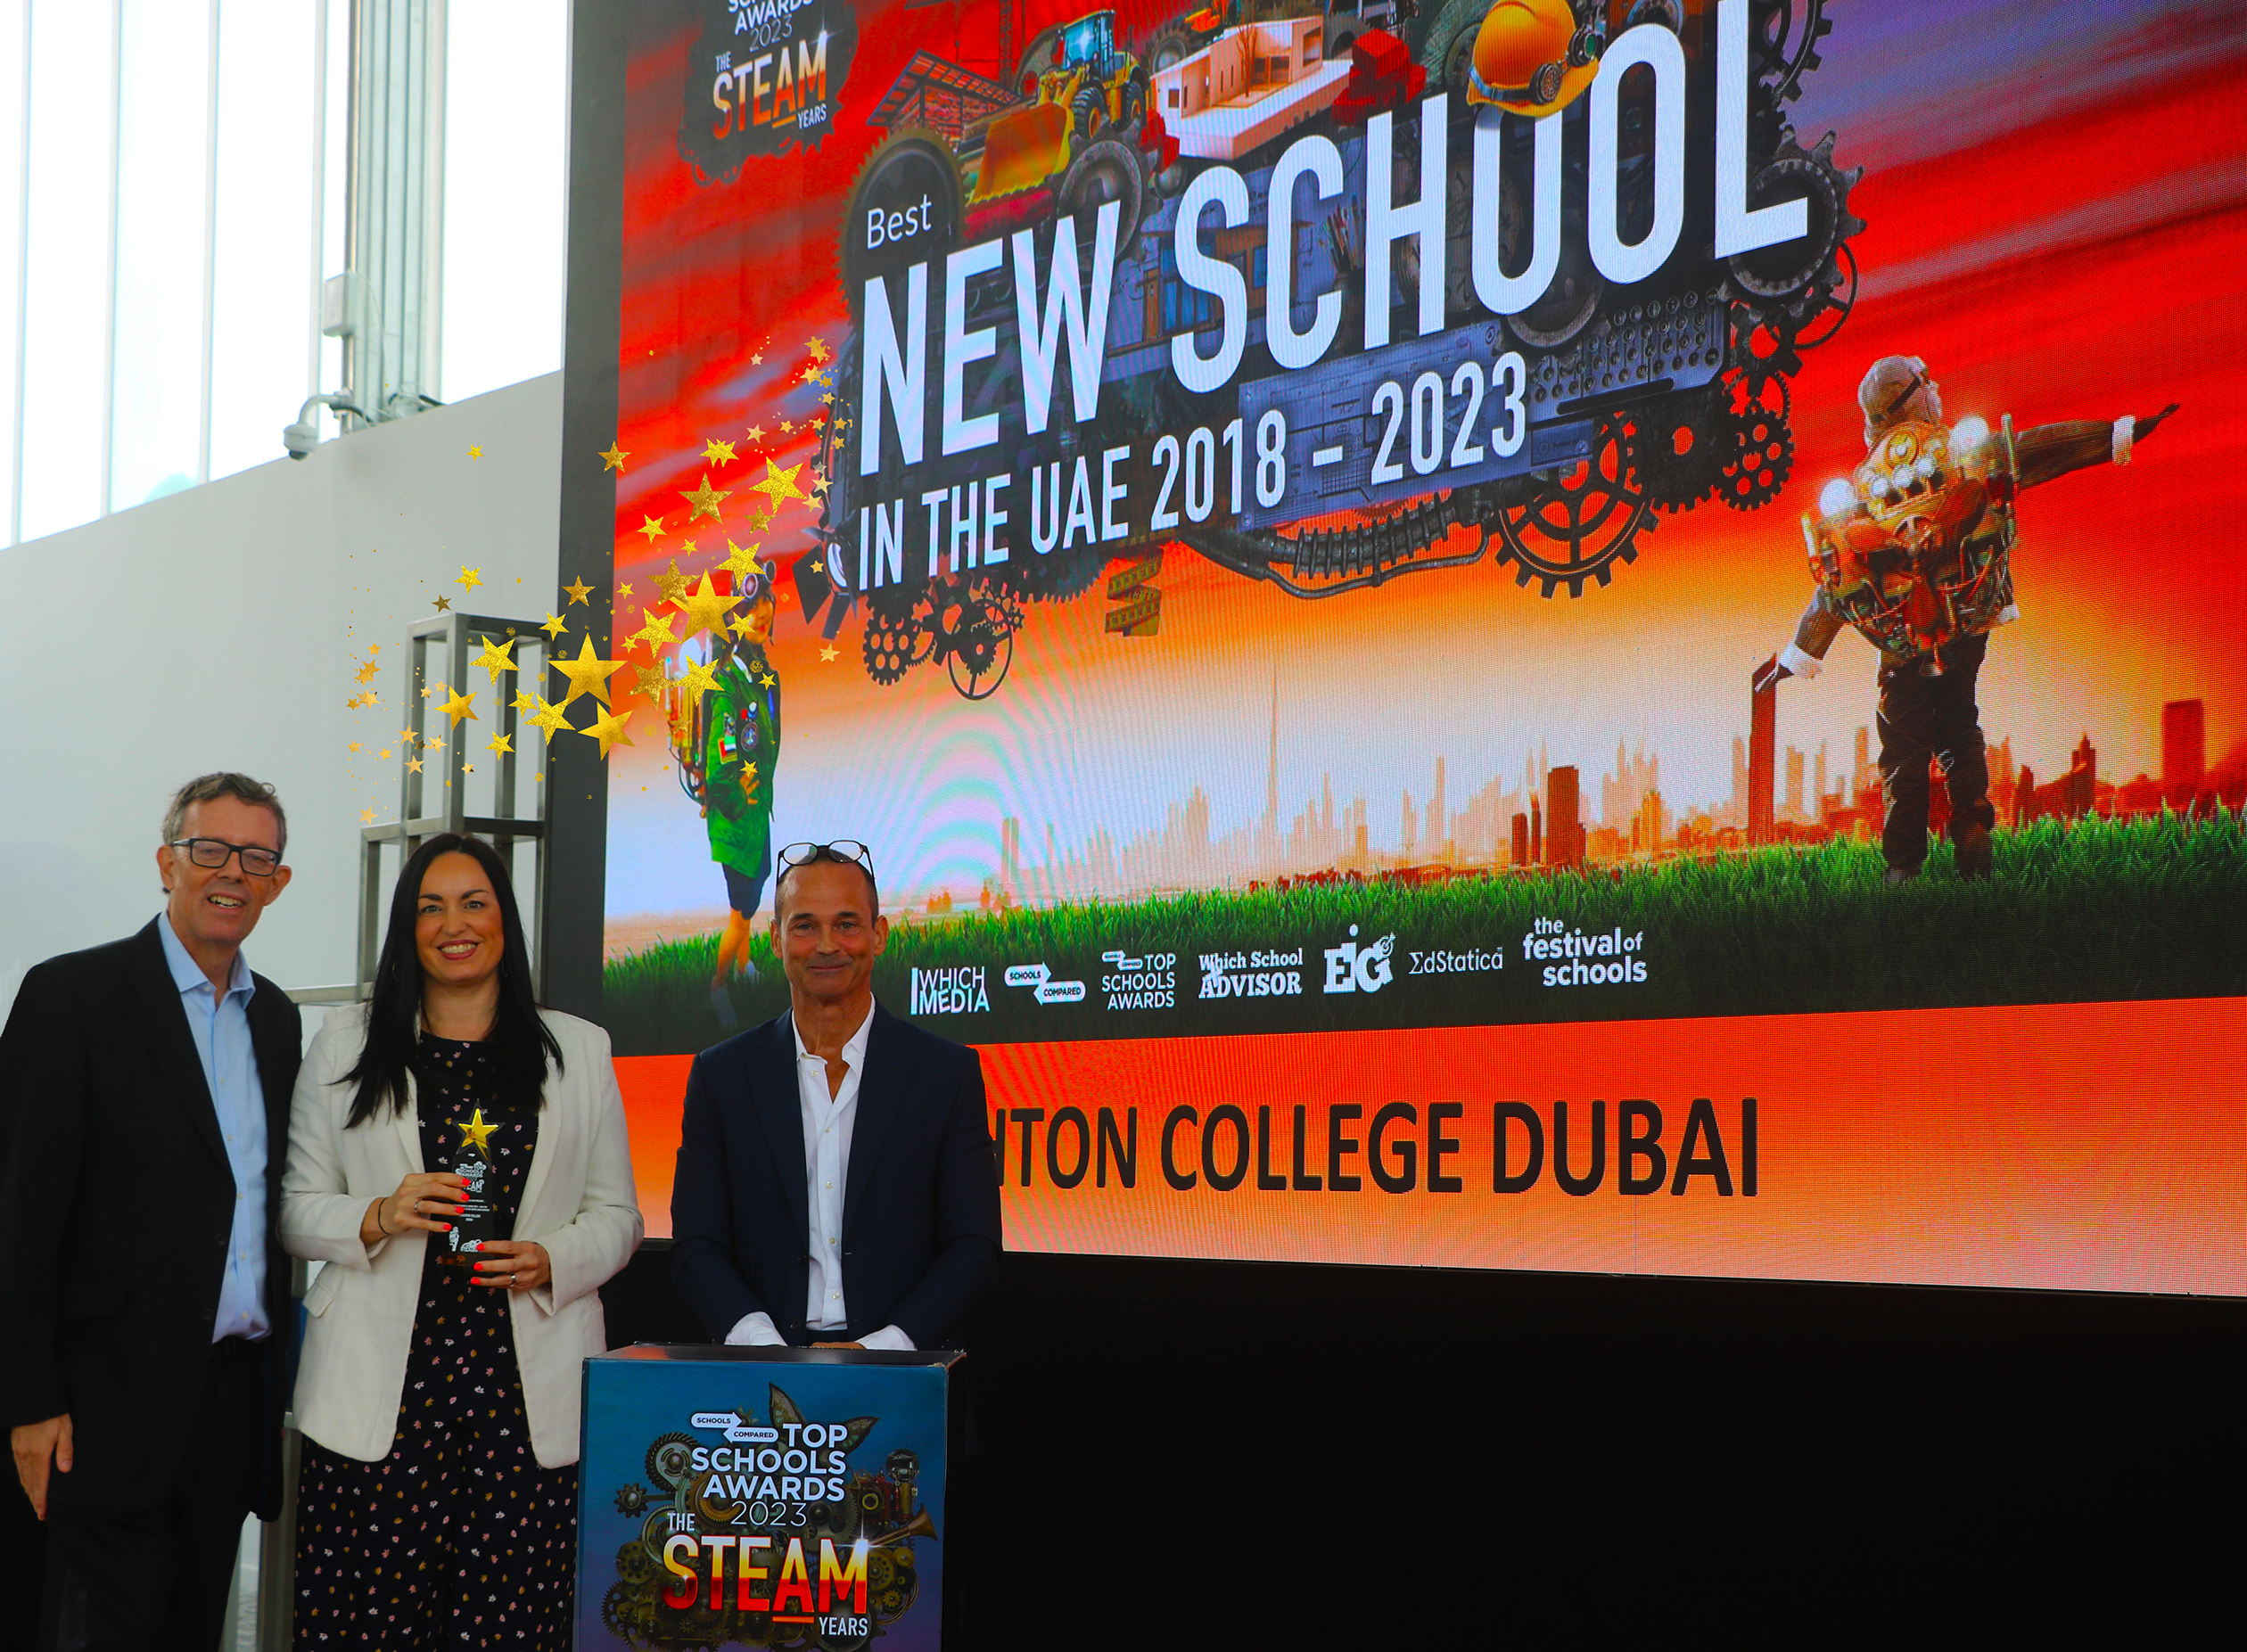 Der Top Schools Award für die beste neue Schule in den VAE wurde an Brighton Collage Dubai verliehen